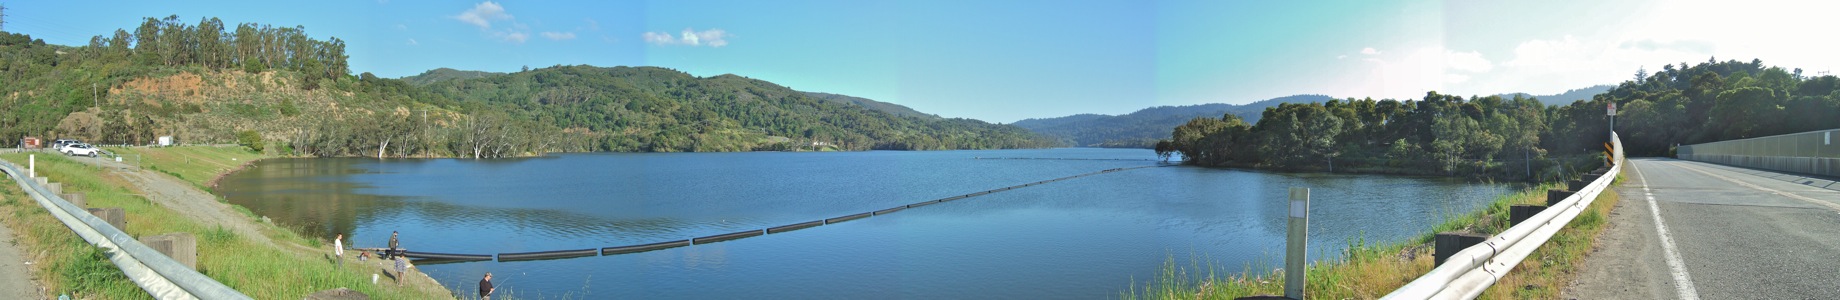 Lexington Reservoir - 4/2011